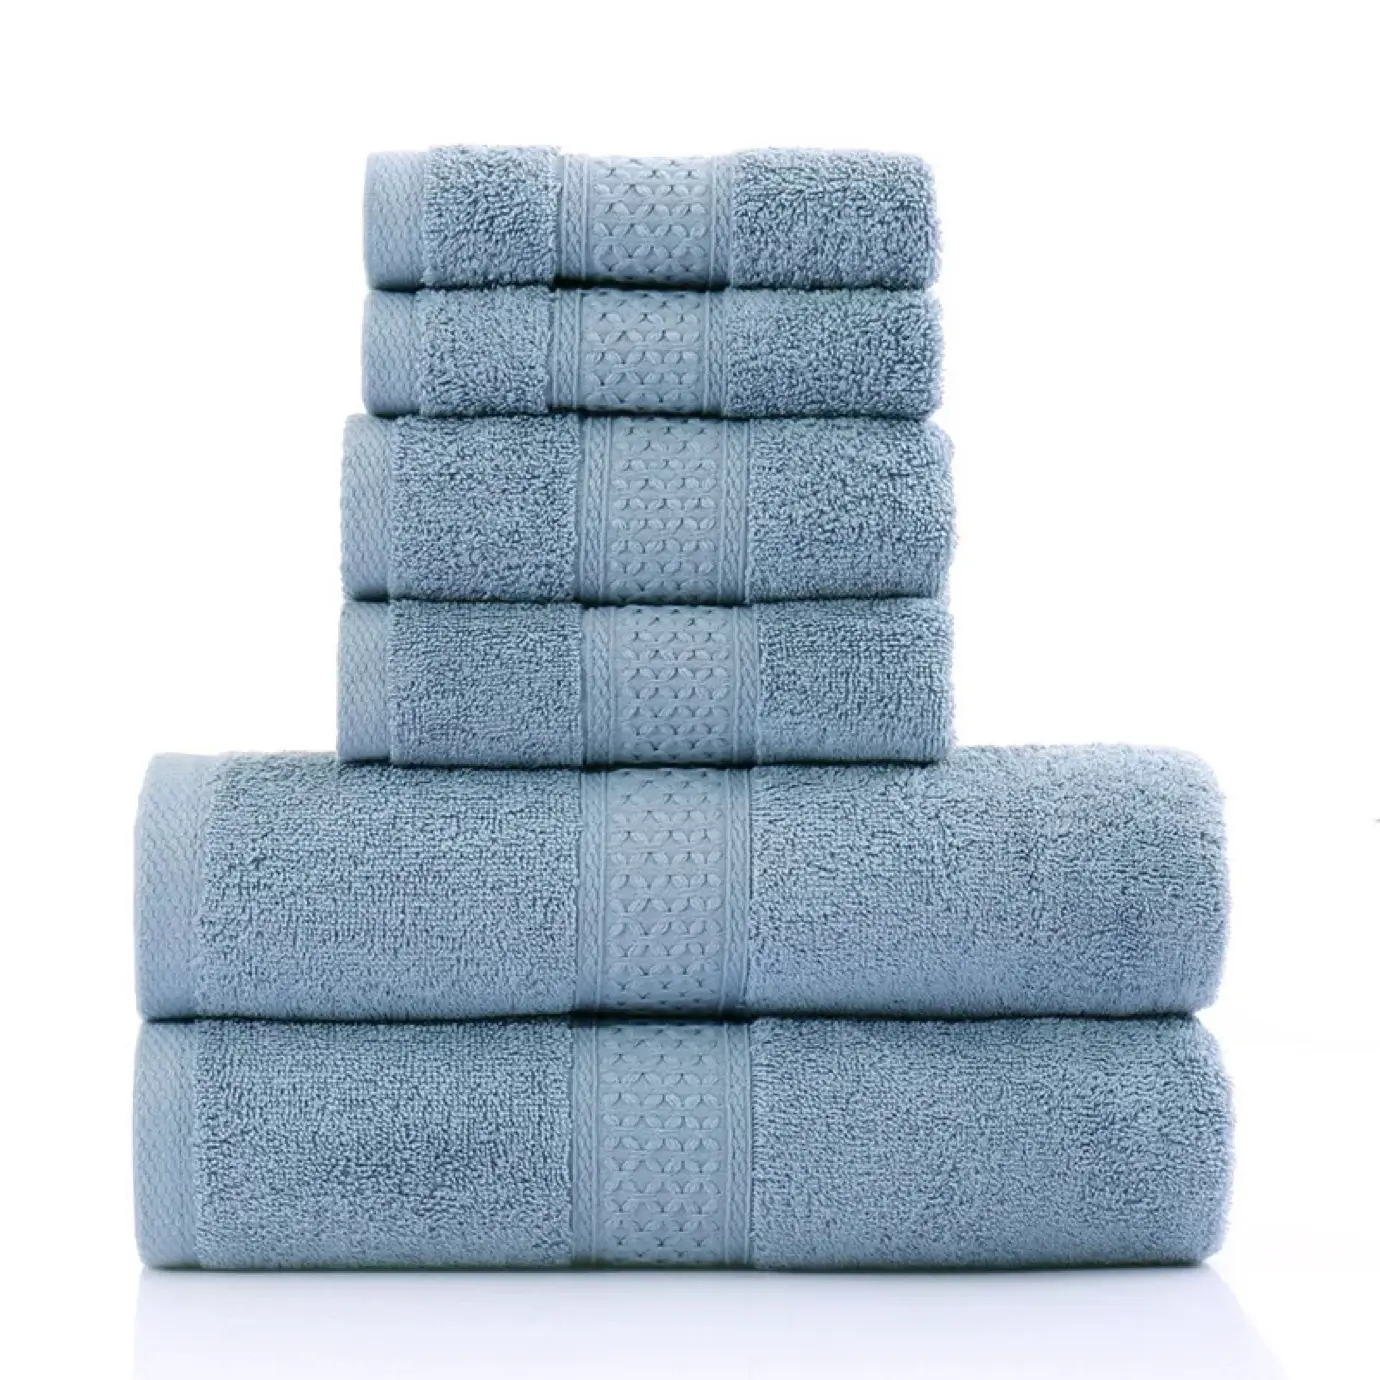 Venta al por mayor logotipo personalizado 100% Toalla de baño de algodón súper seco barato absorción de agua juego de toallas de hotel